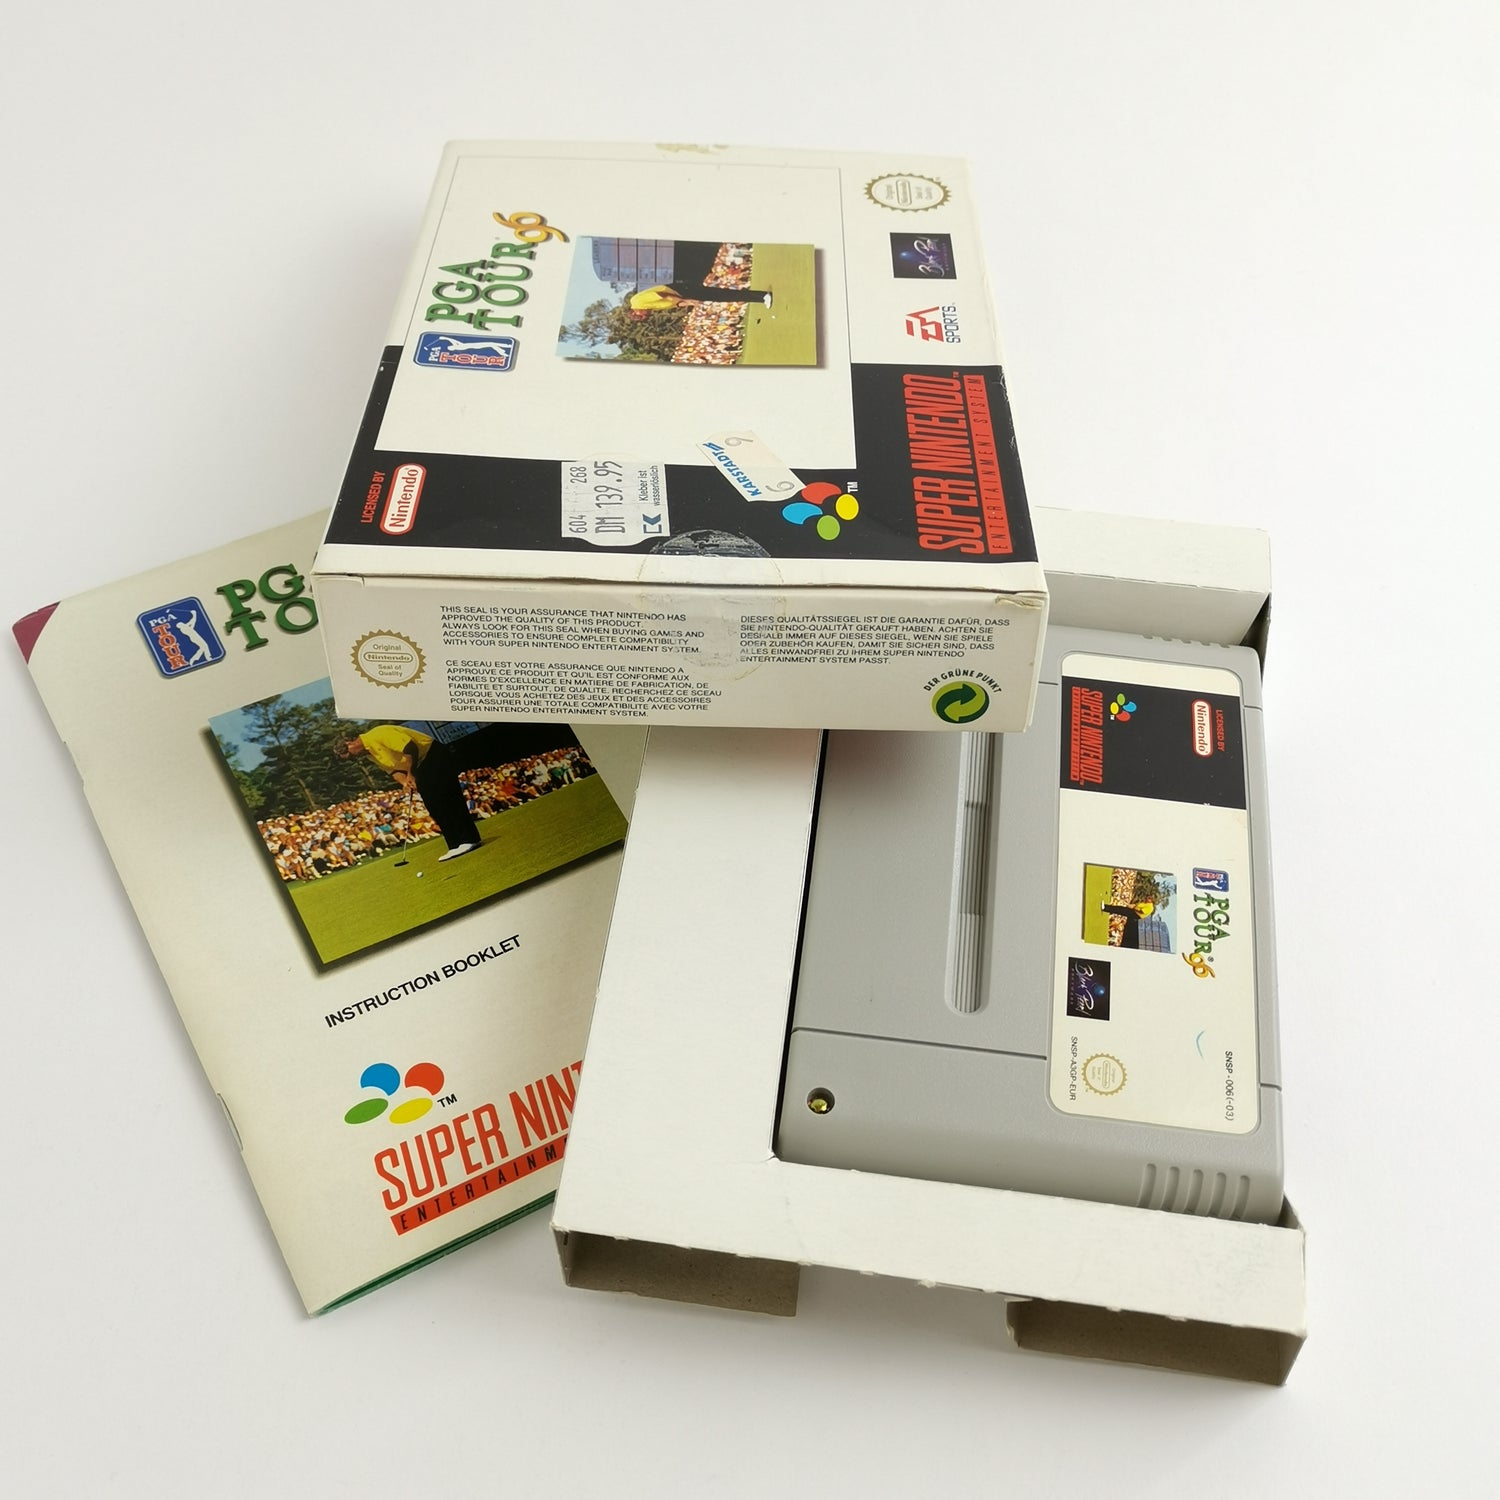 Super Nintendo Spiel : PGA Tour 96 - OVP & Anleitung PAL EUR | SNES Golf 16 Bit